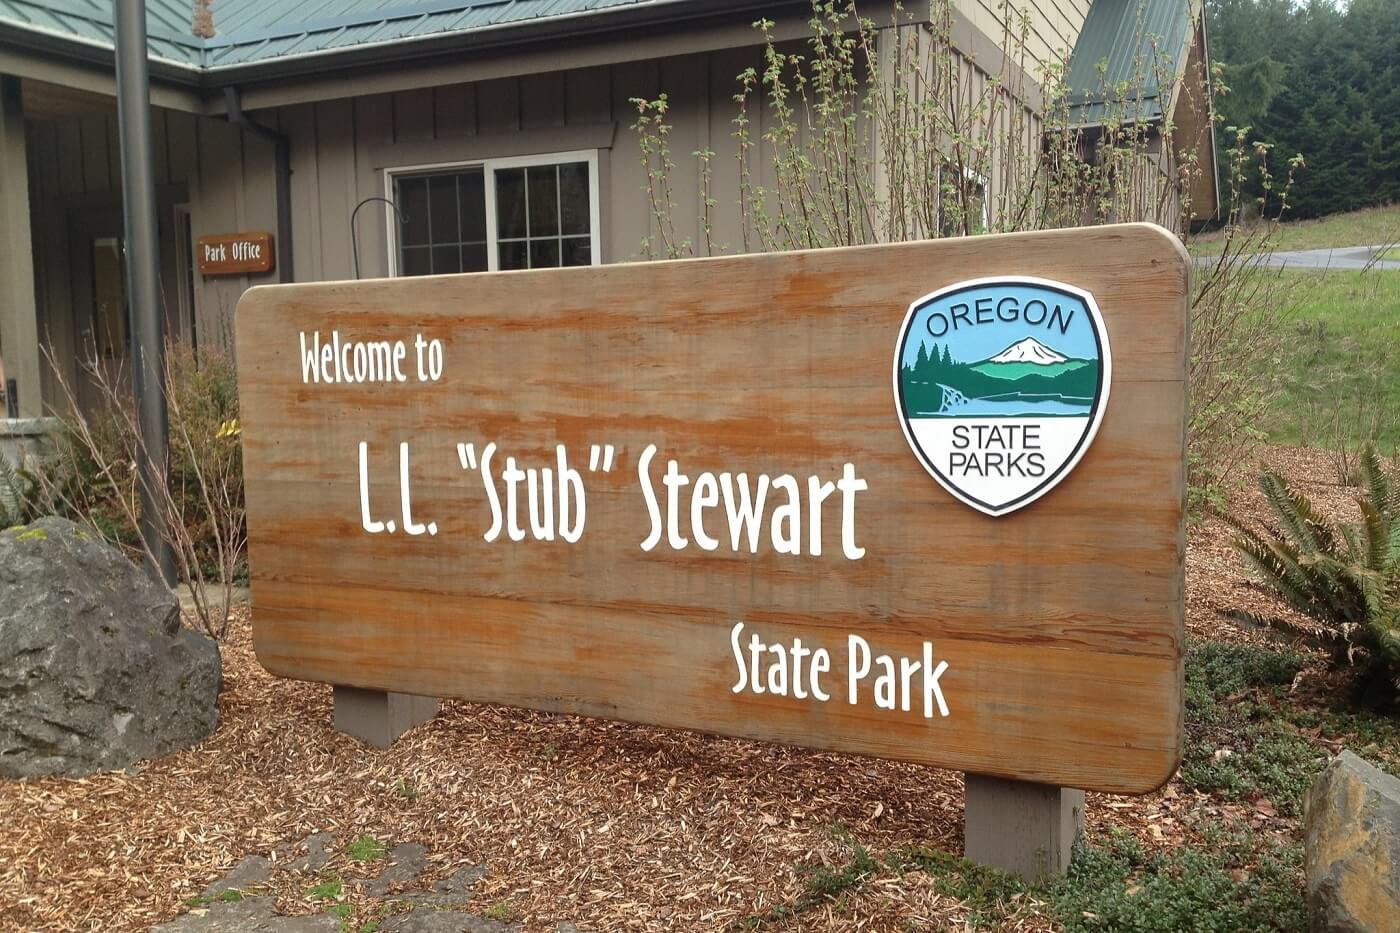 Sign at L.L. Stub Stewart State Park